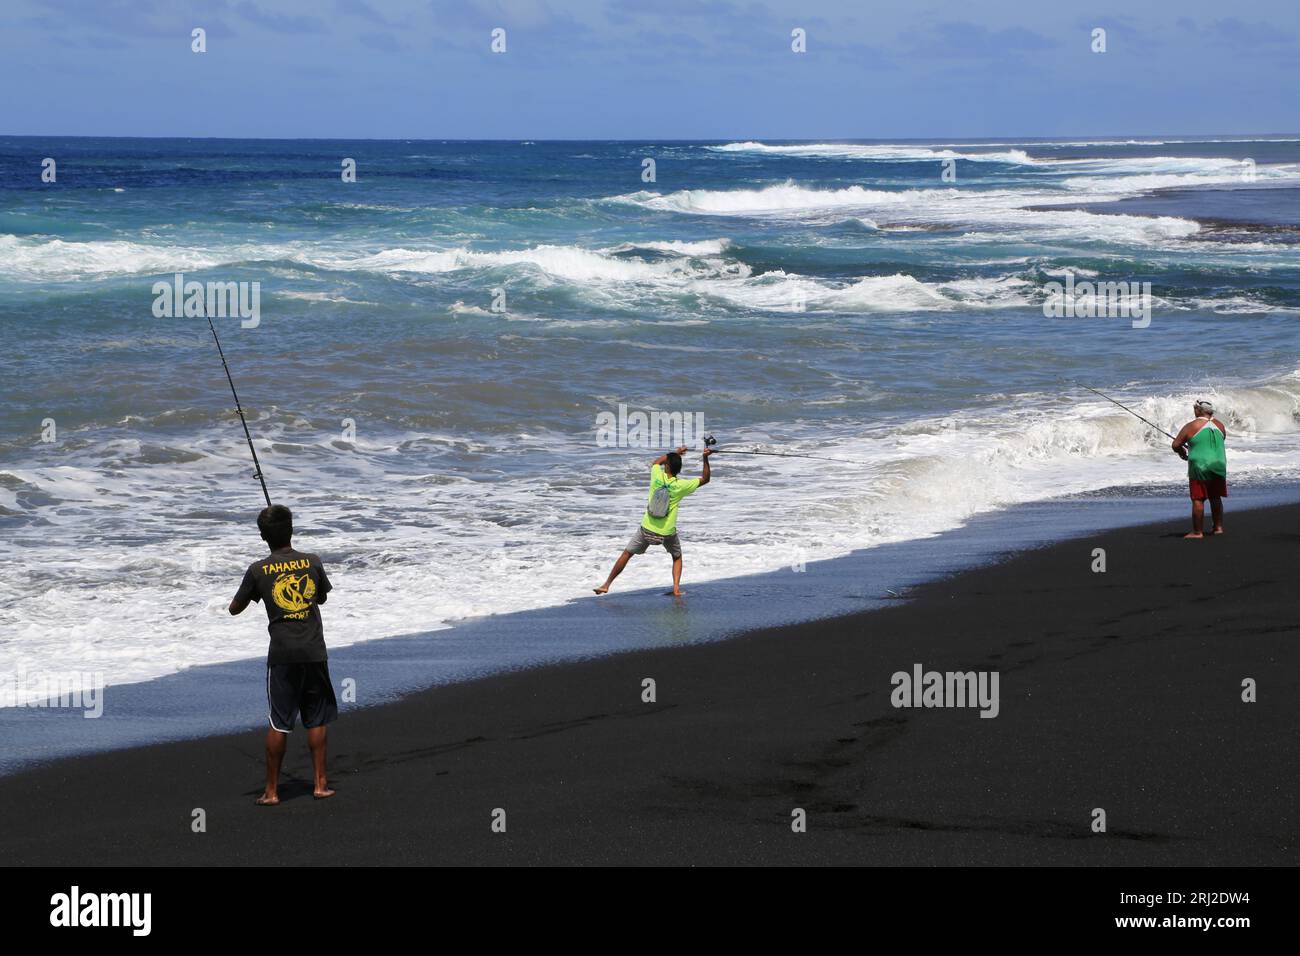 pêche à la ligne sur la plage de Sable noir volcanique de Papara à Tahiti en Polynésie francaise. Cette plage de Taharuu est connue pour ses belles va Foto Stock